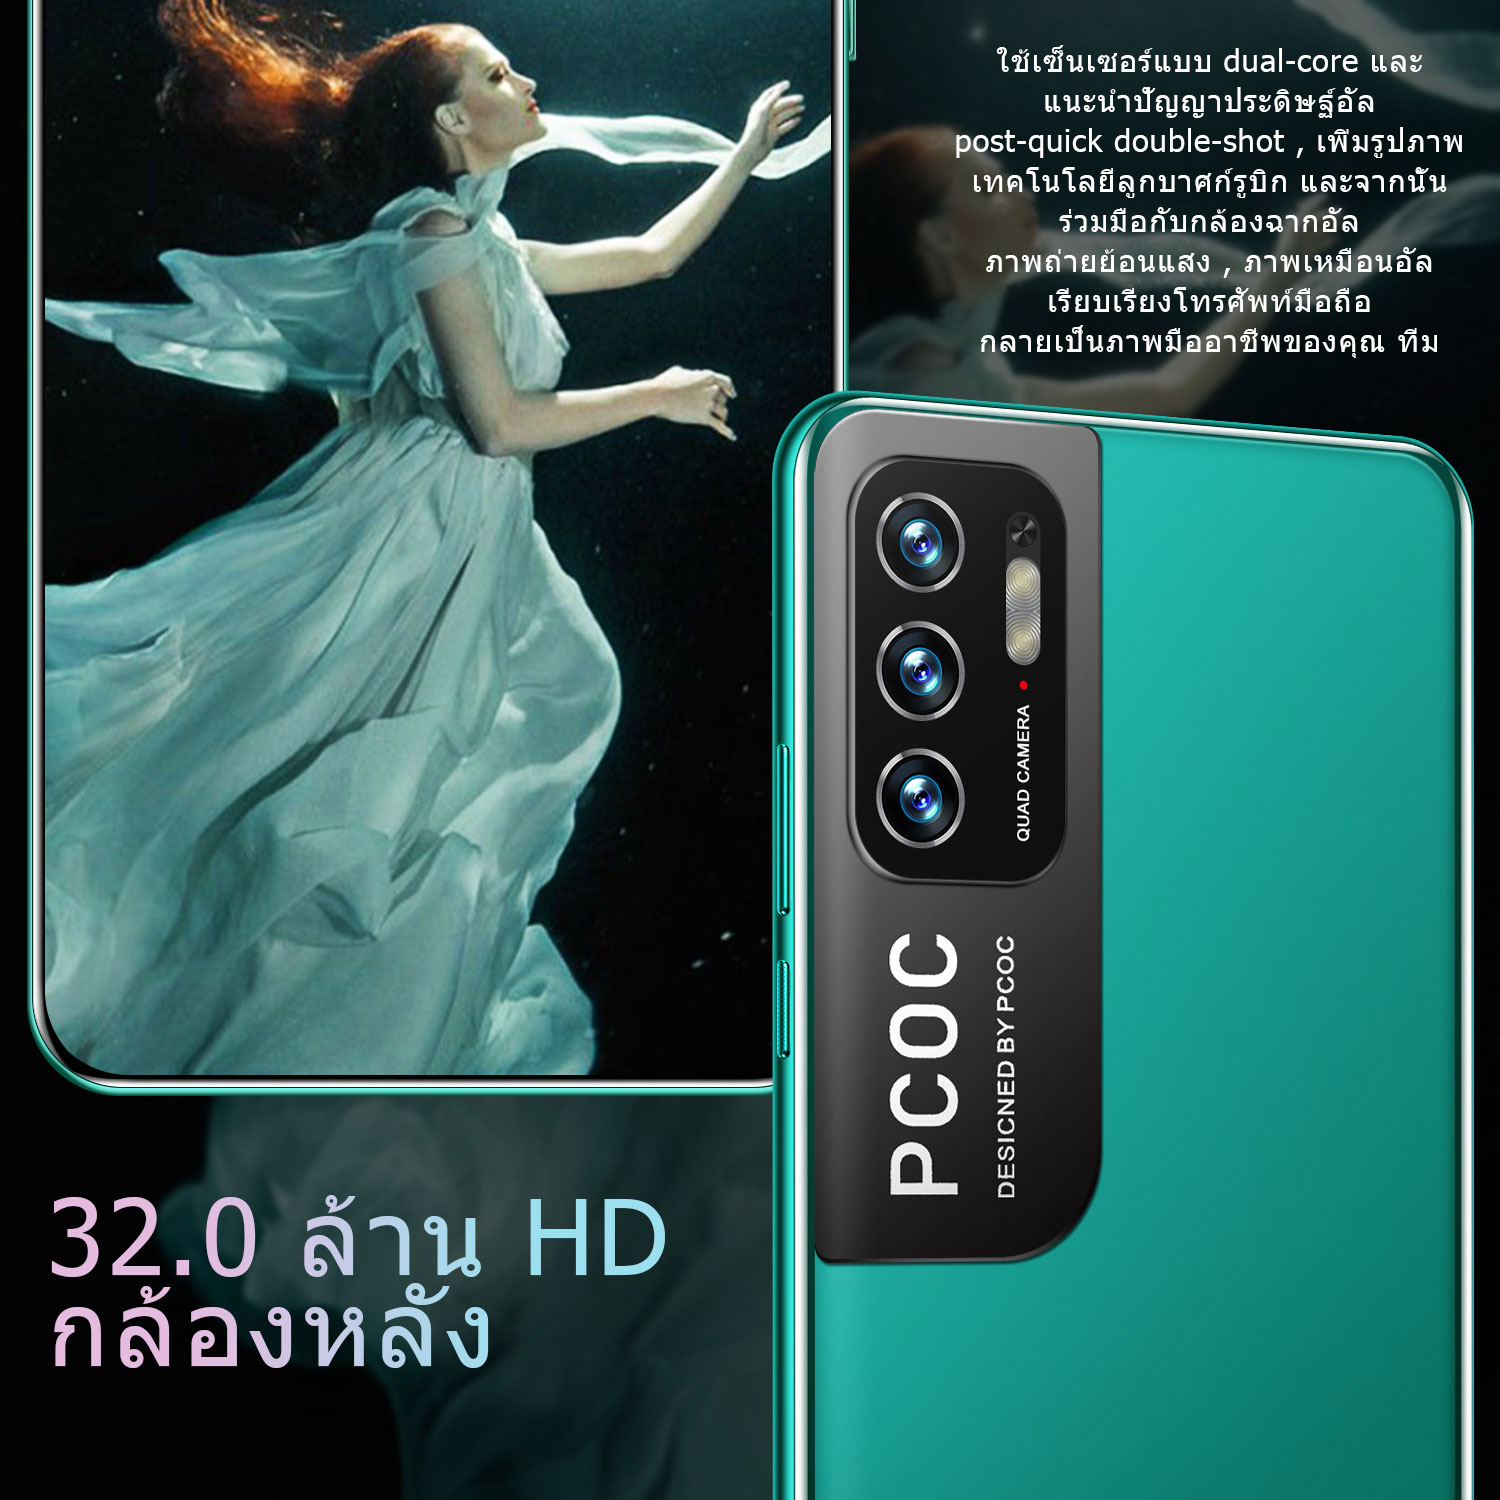 คำอธิบายเพิ่มเติมเกี่ยวกับ 【ศูนย์ไทย Realmi】โทรศัพท์มือถือถูกๆ 5g สมาร์ทโฟน Android 9.0 Original smartphone มือถือ2ซิม มือถือ โทรศัพท์มือถือ รองรับ5G 6800 mah หรือมากกว่า 7.3inch smartphone กล้องหน้า 16MPกล้องหลัง32MP 4G/5G LTE Mobile Phone โทรศัพท์ทรูมูฟ 6GB+128GB